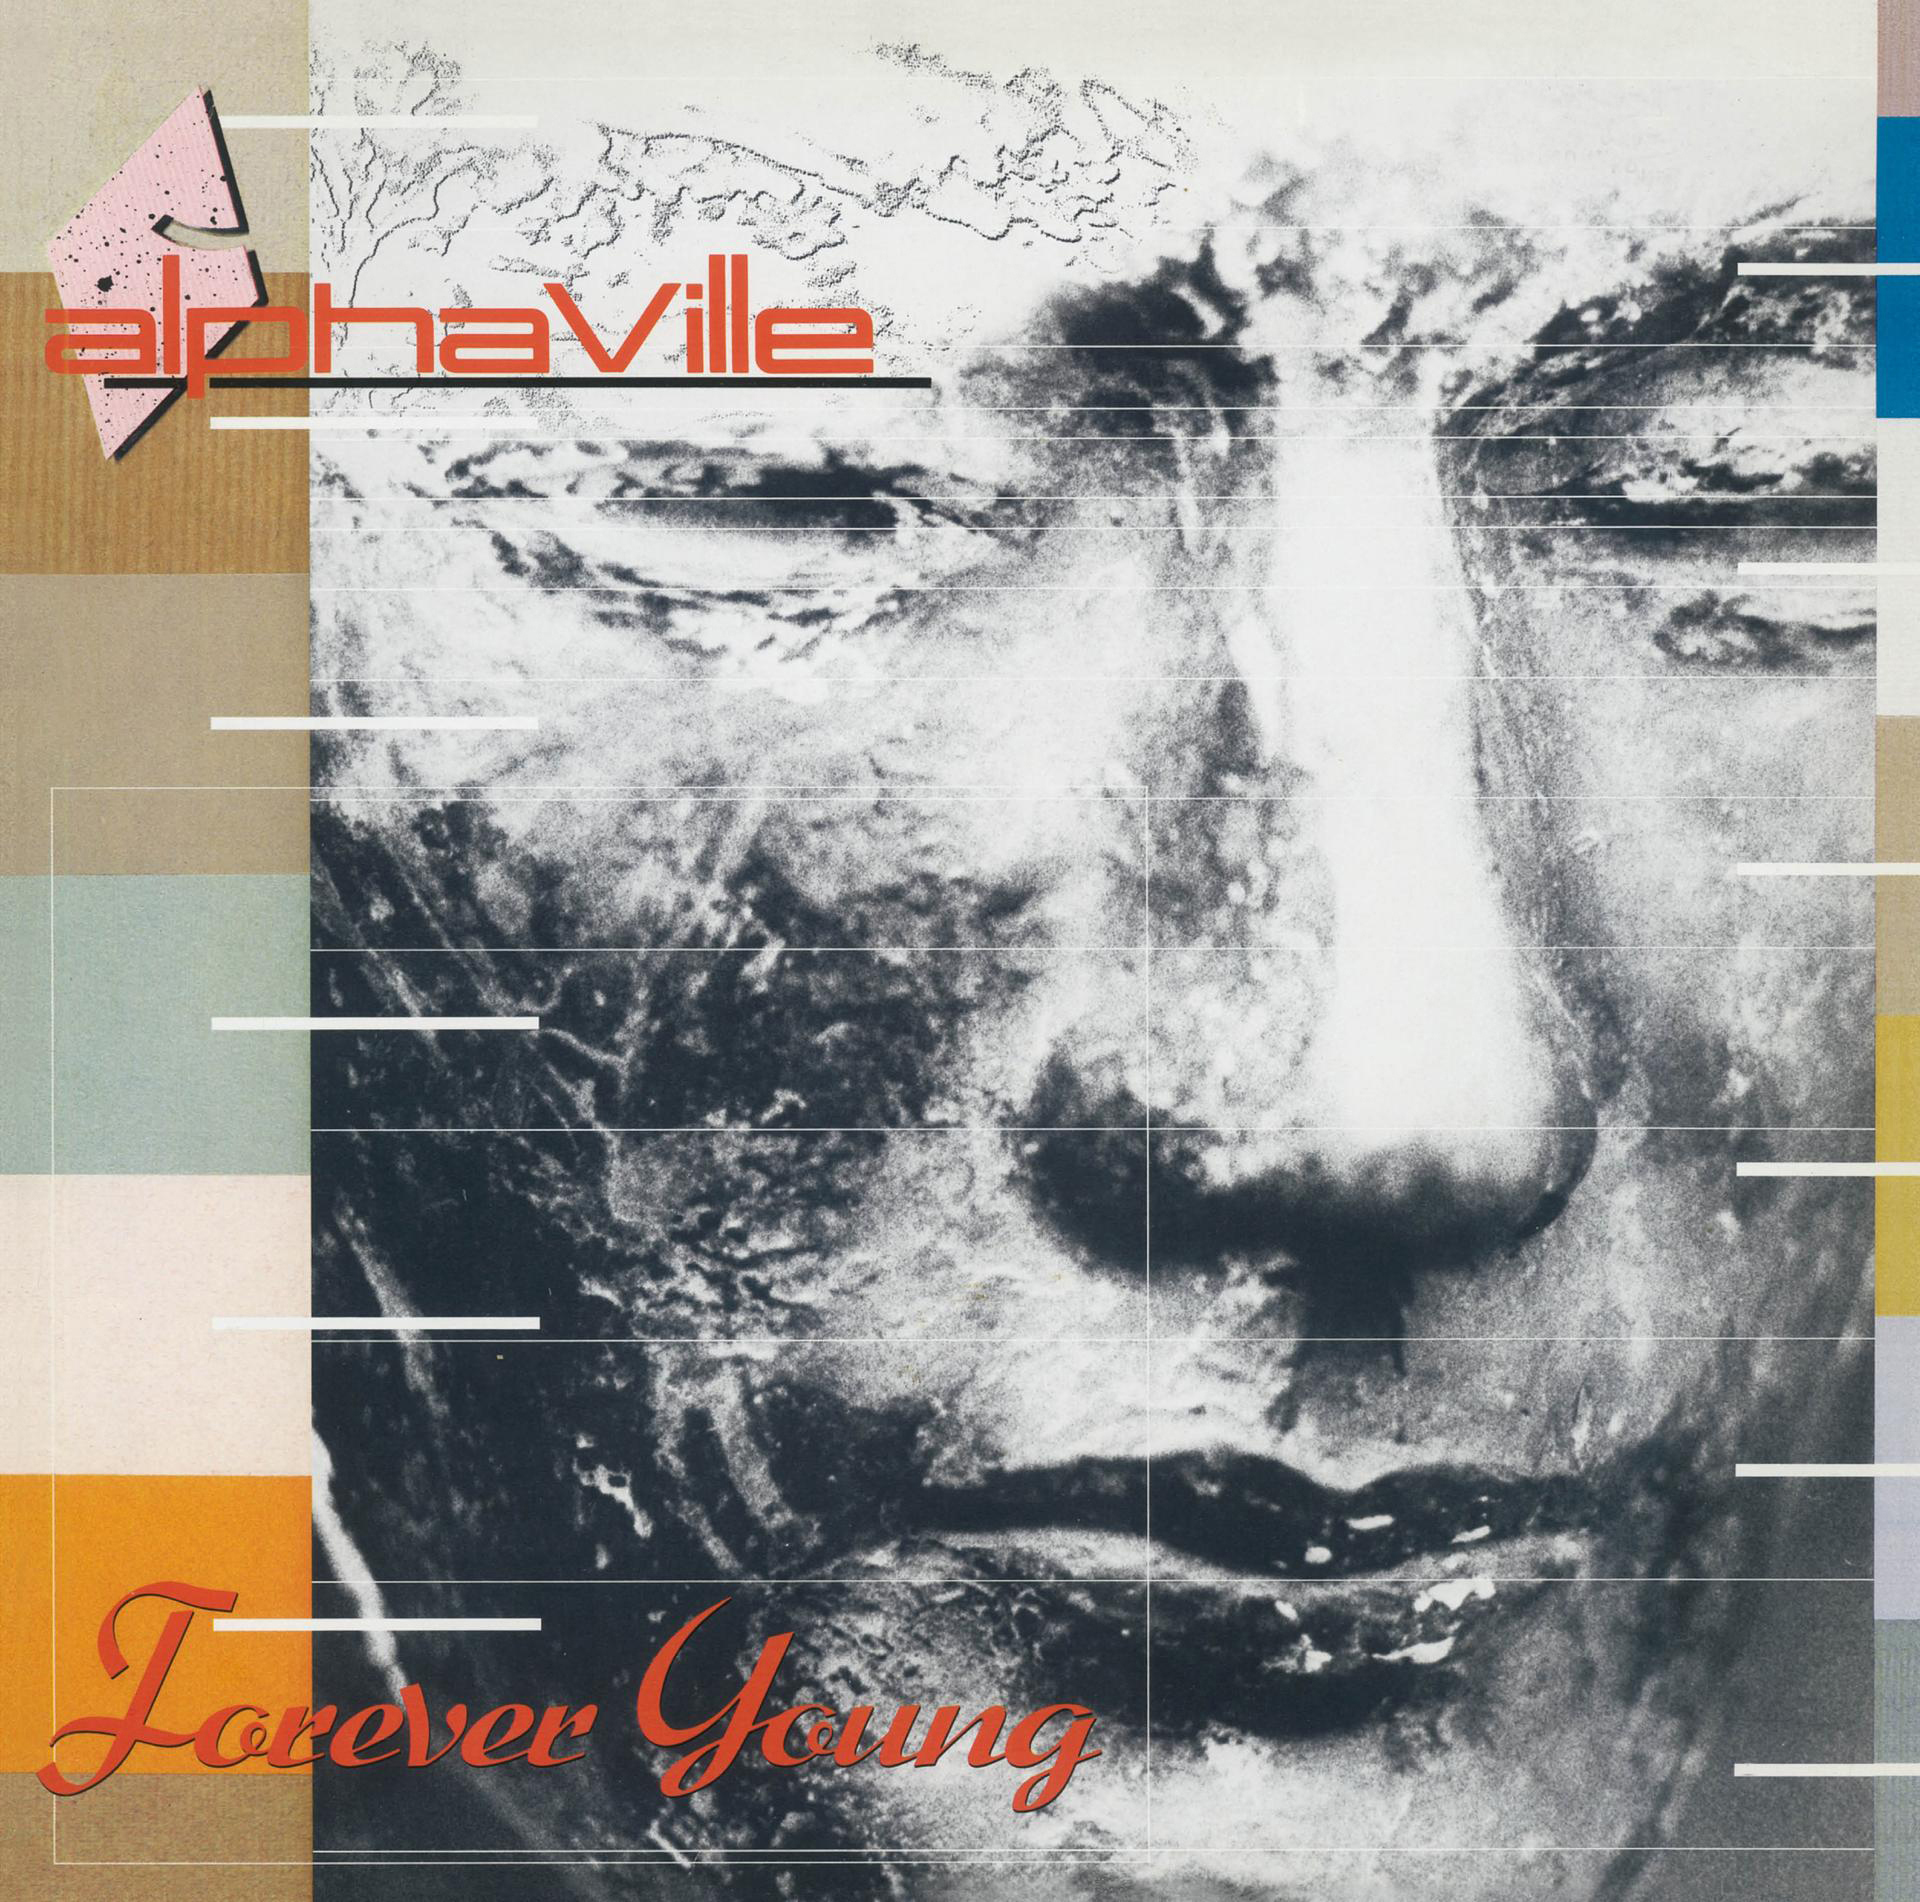 Young - (Vinyl) Forever - (Remastered) Alphaville